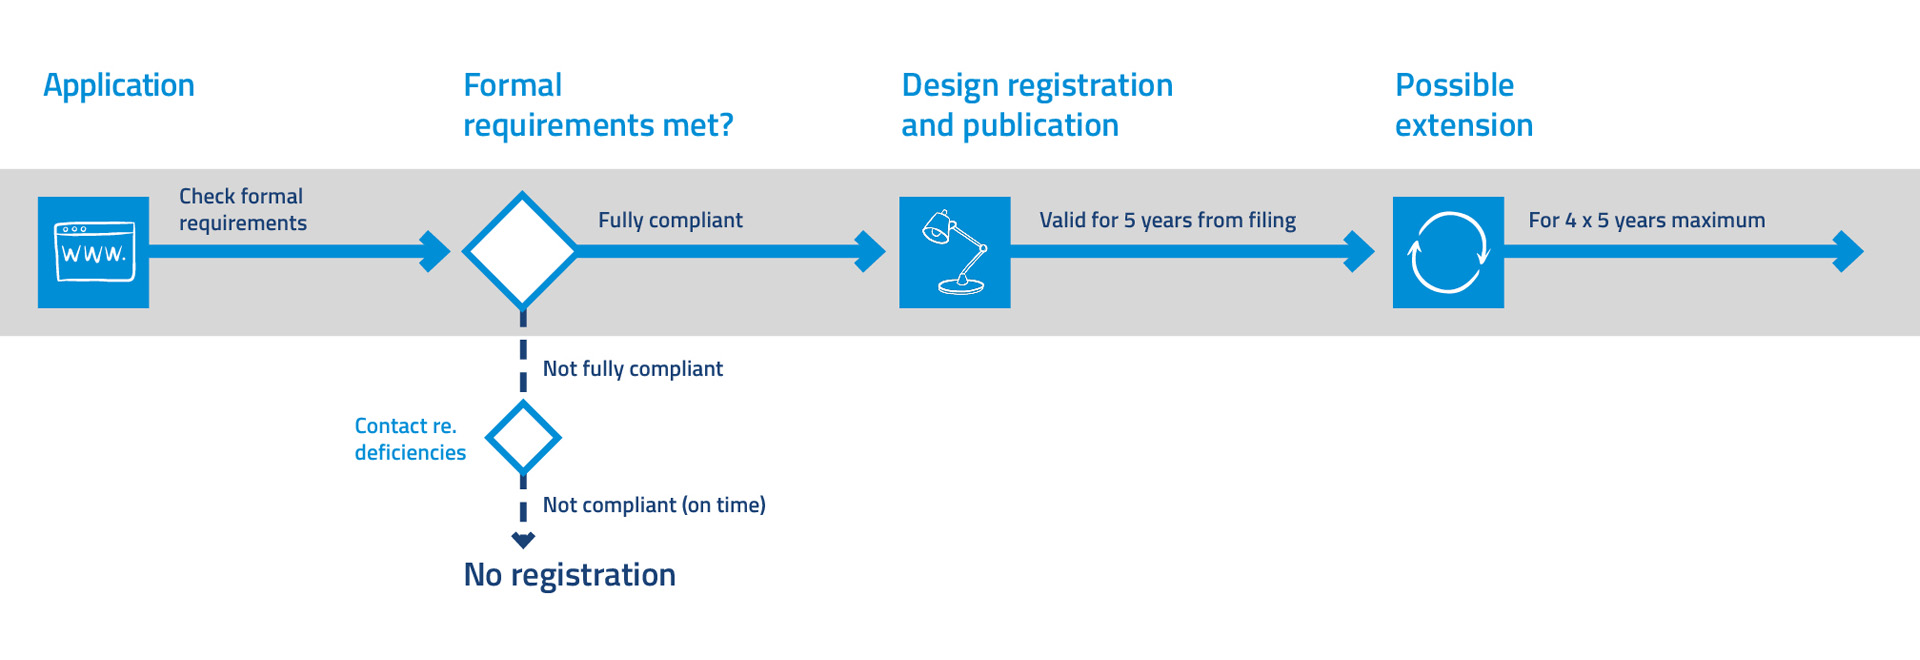 Design registration procedure schematically depicted